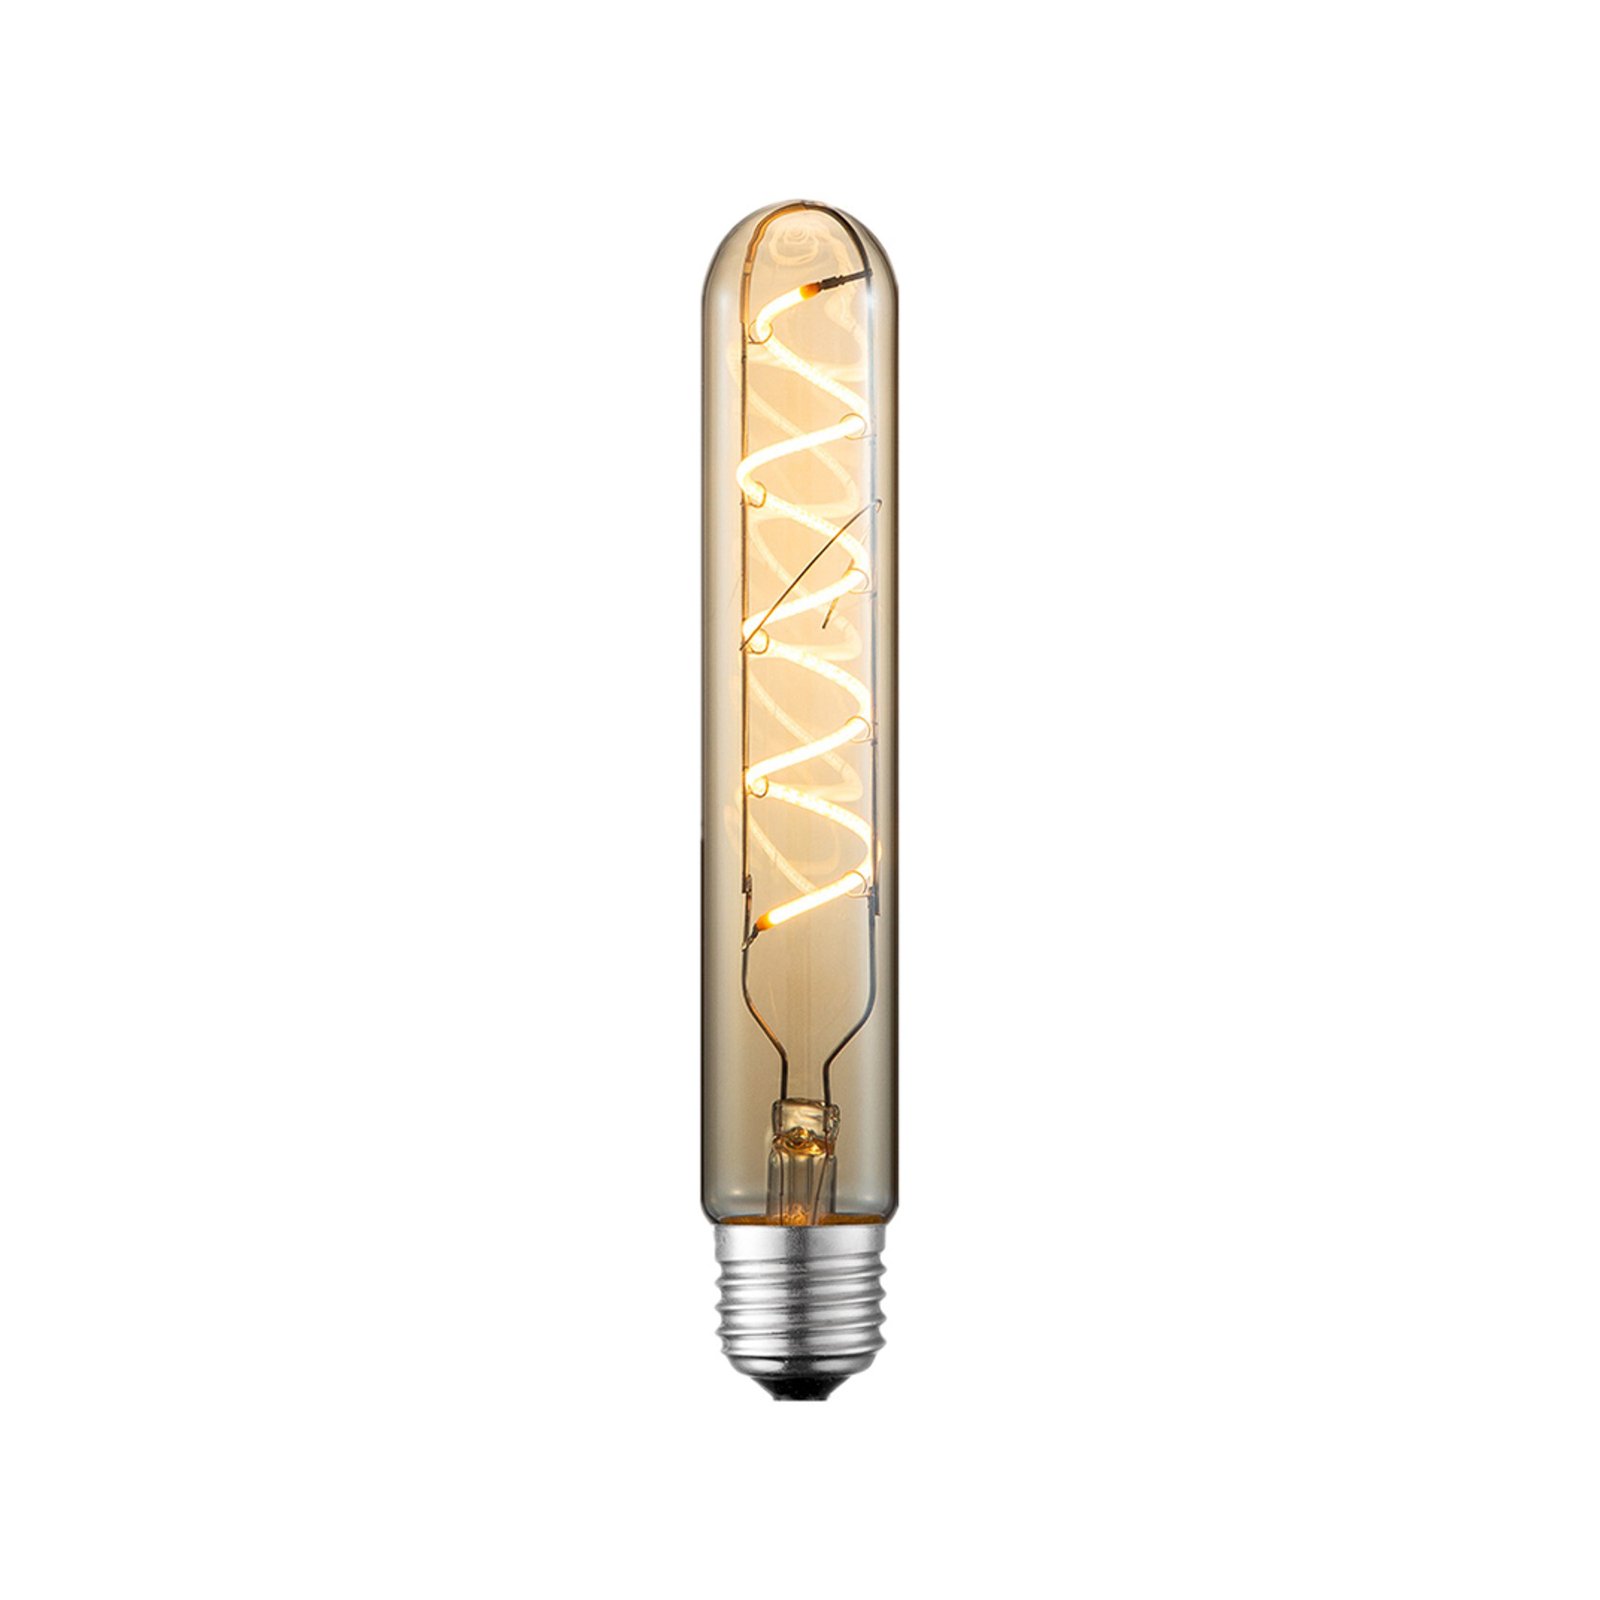 Lucande LED lamp E27 Ø 3cm 4W 2700K amber